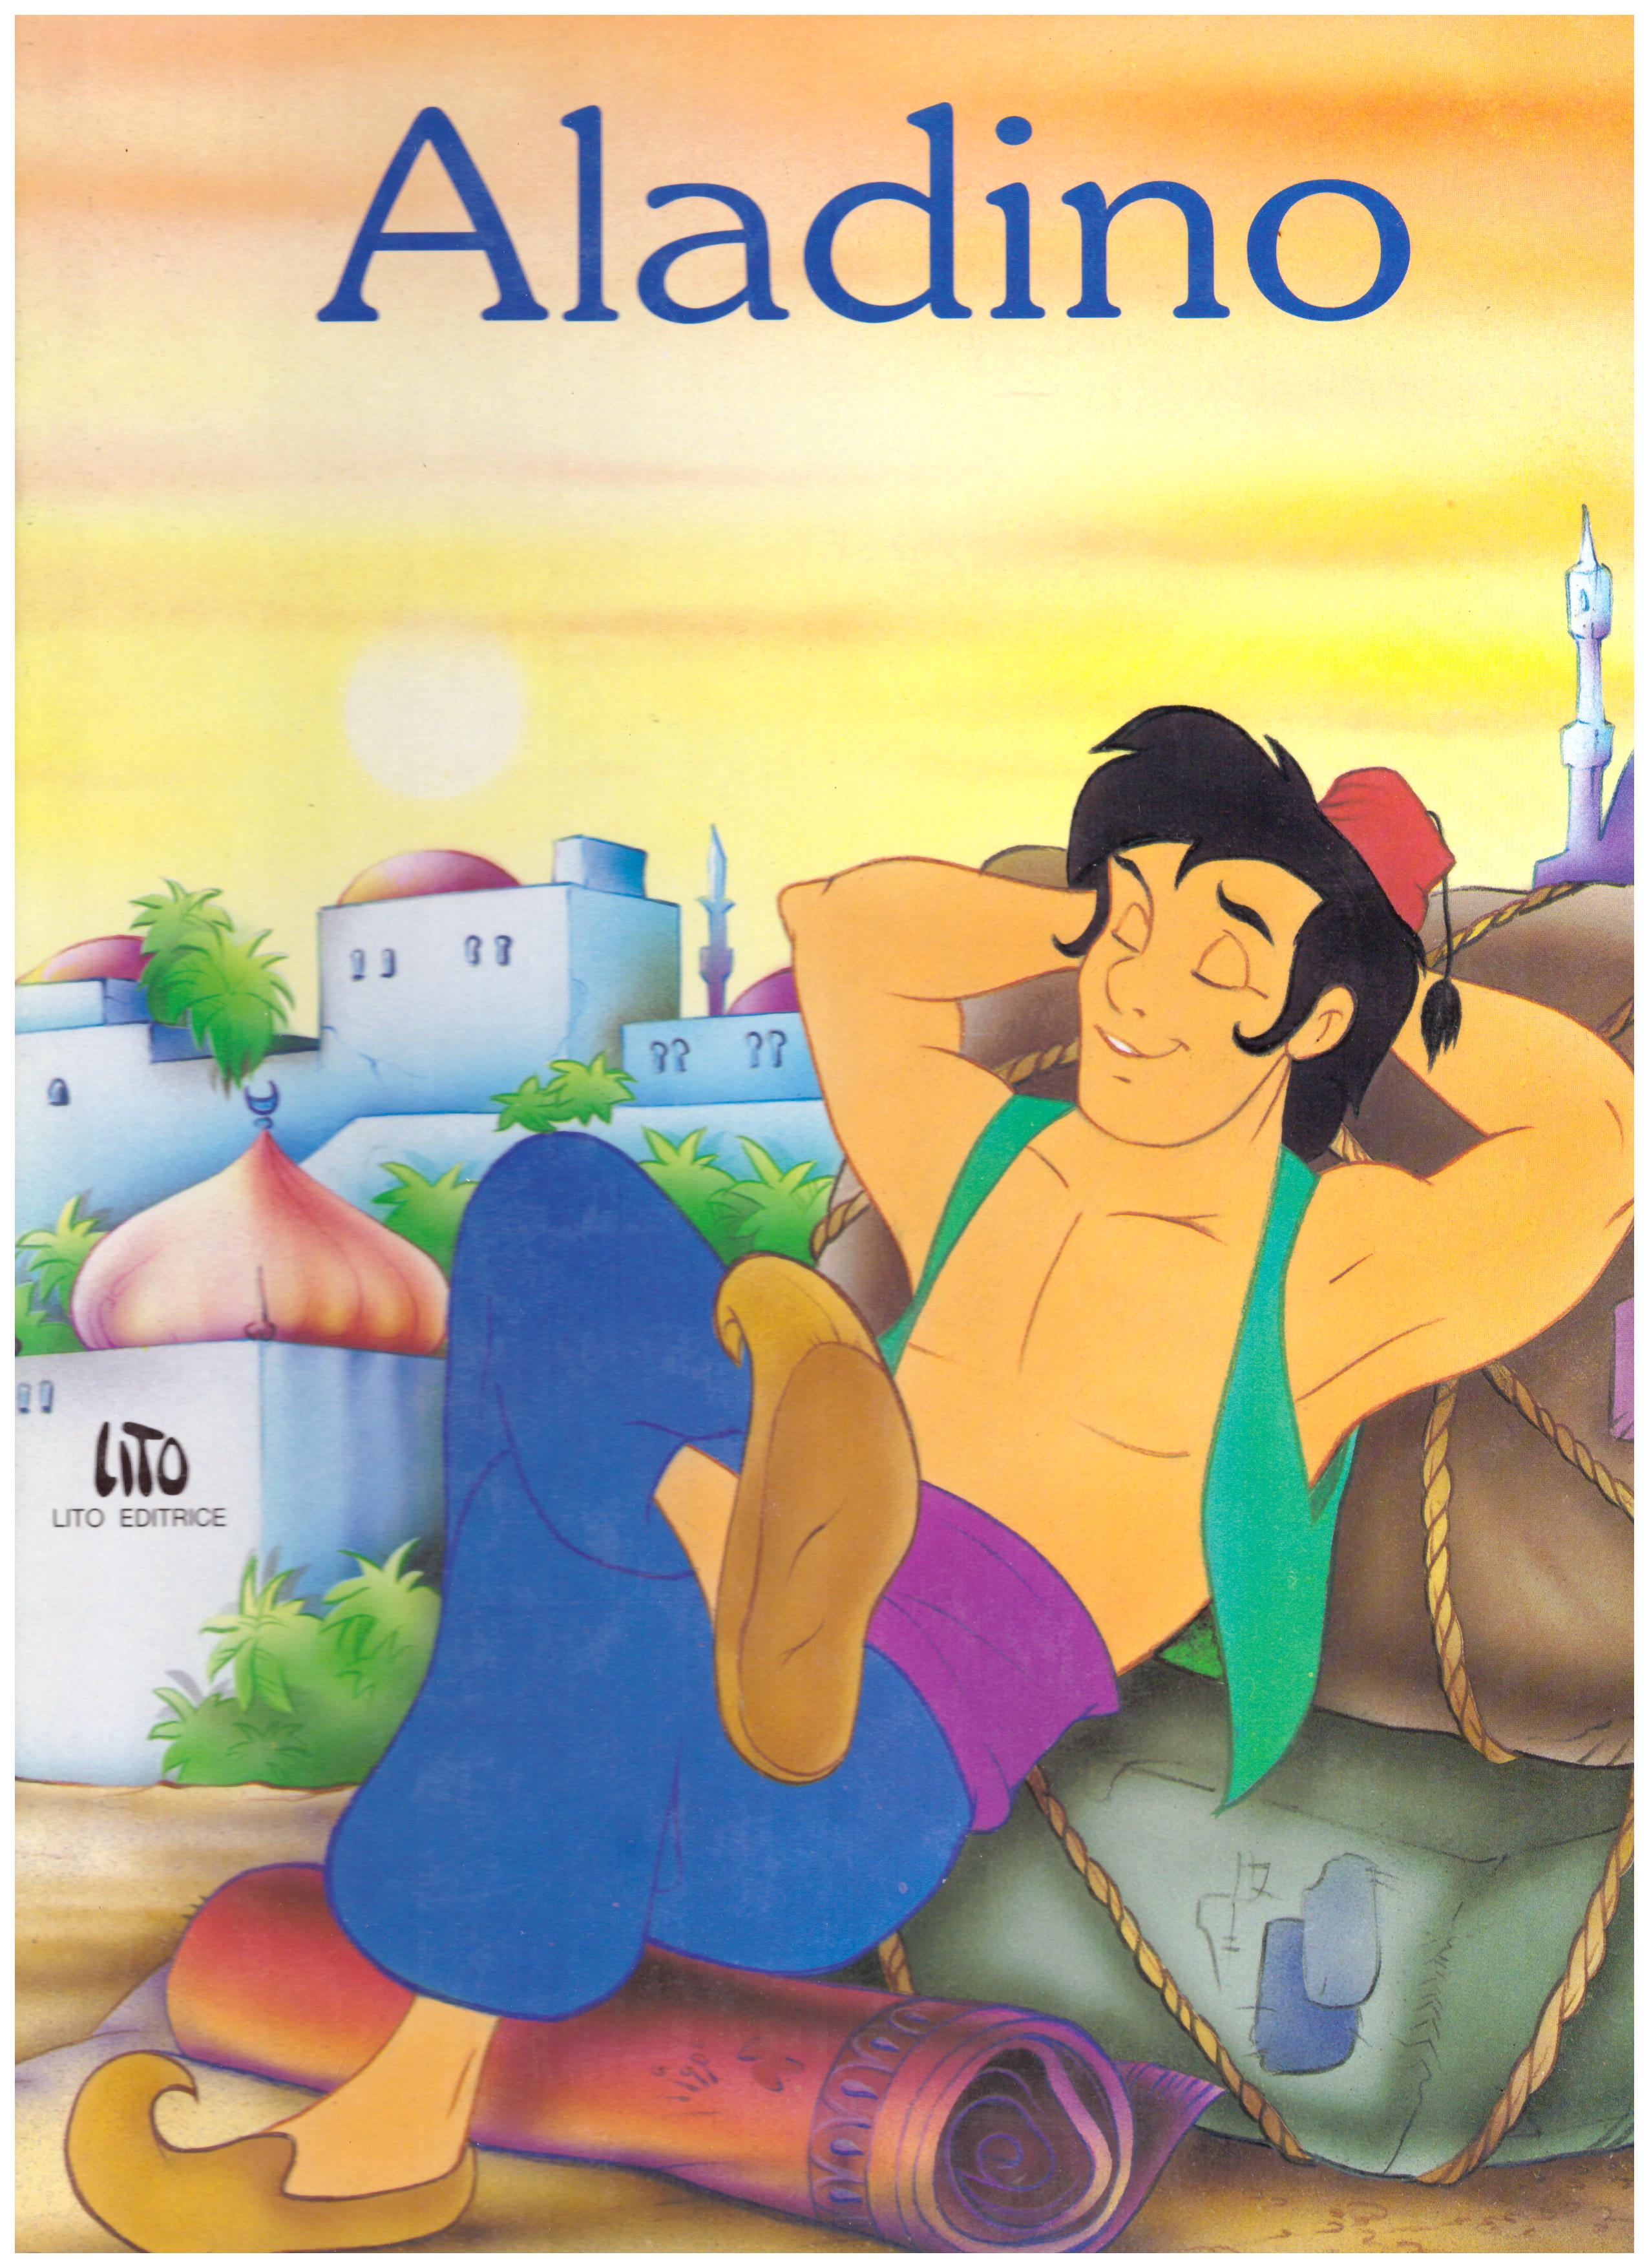 Titolo: Aladino Autore: AA.VV.  Editore: LITO, 1993